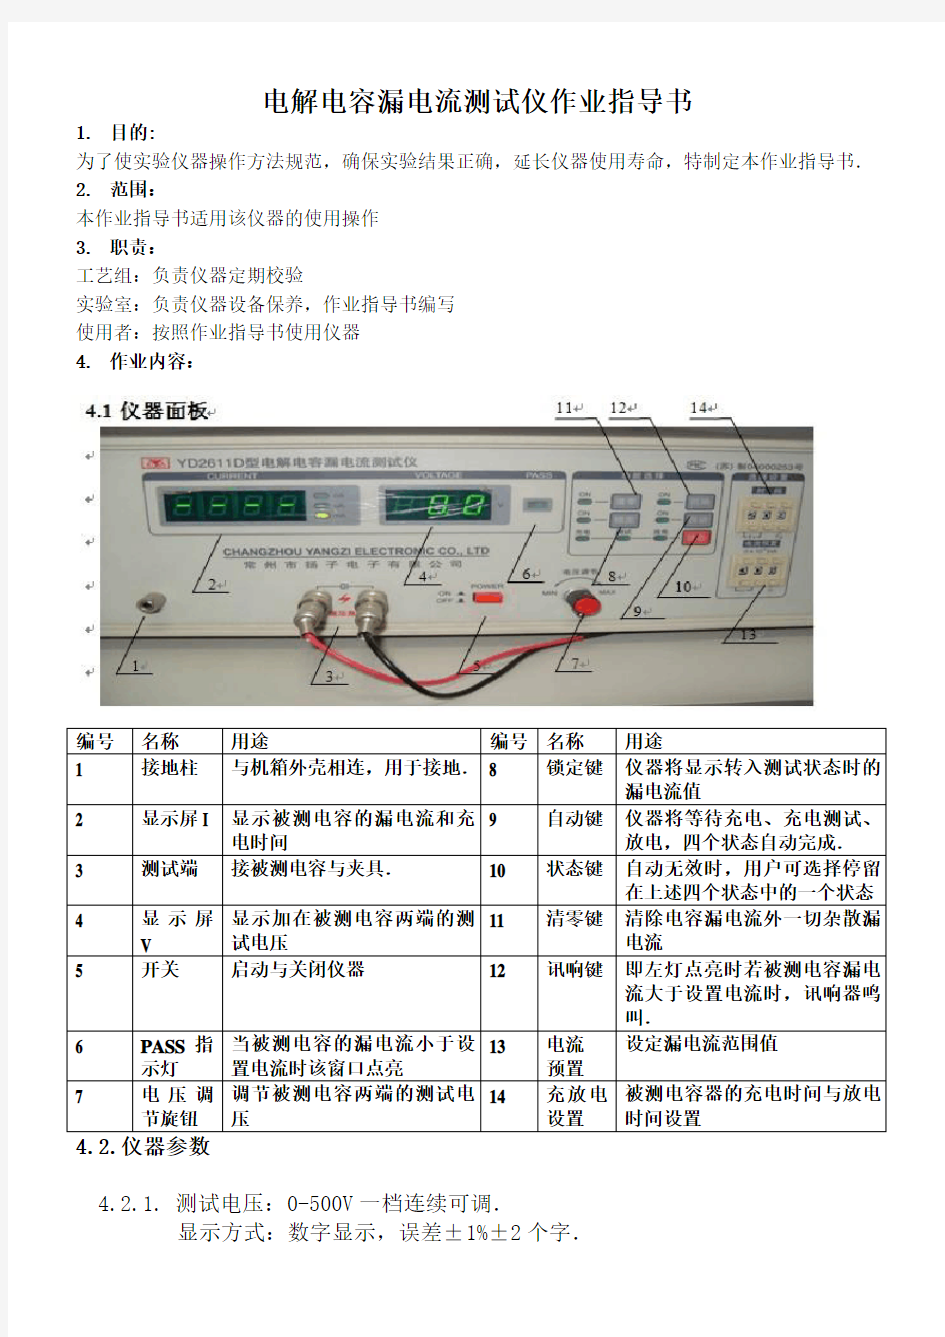 电解电容漏电流测试仪作业指导书